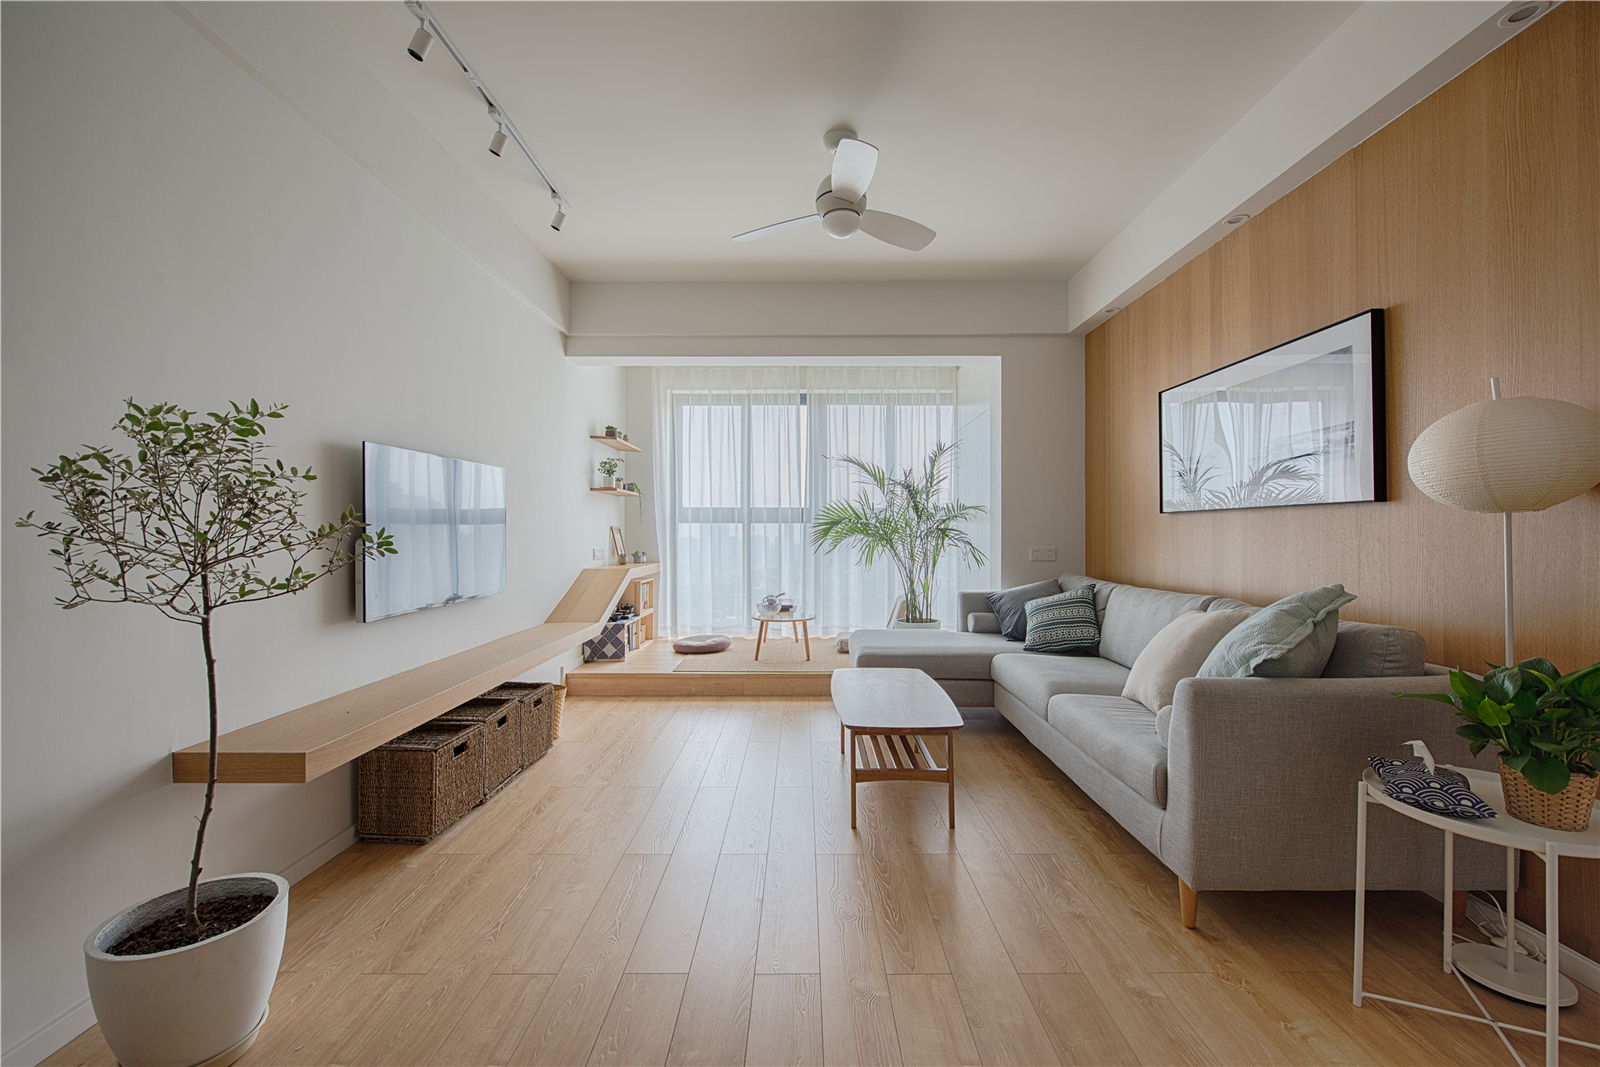 极简日式风格三居客厅装修效果图